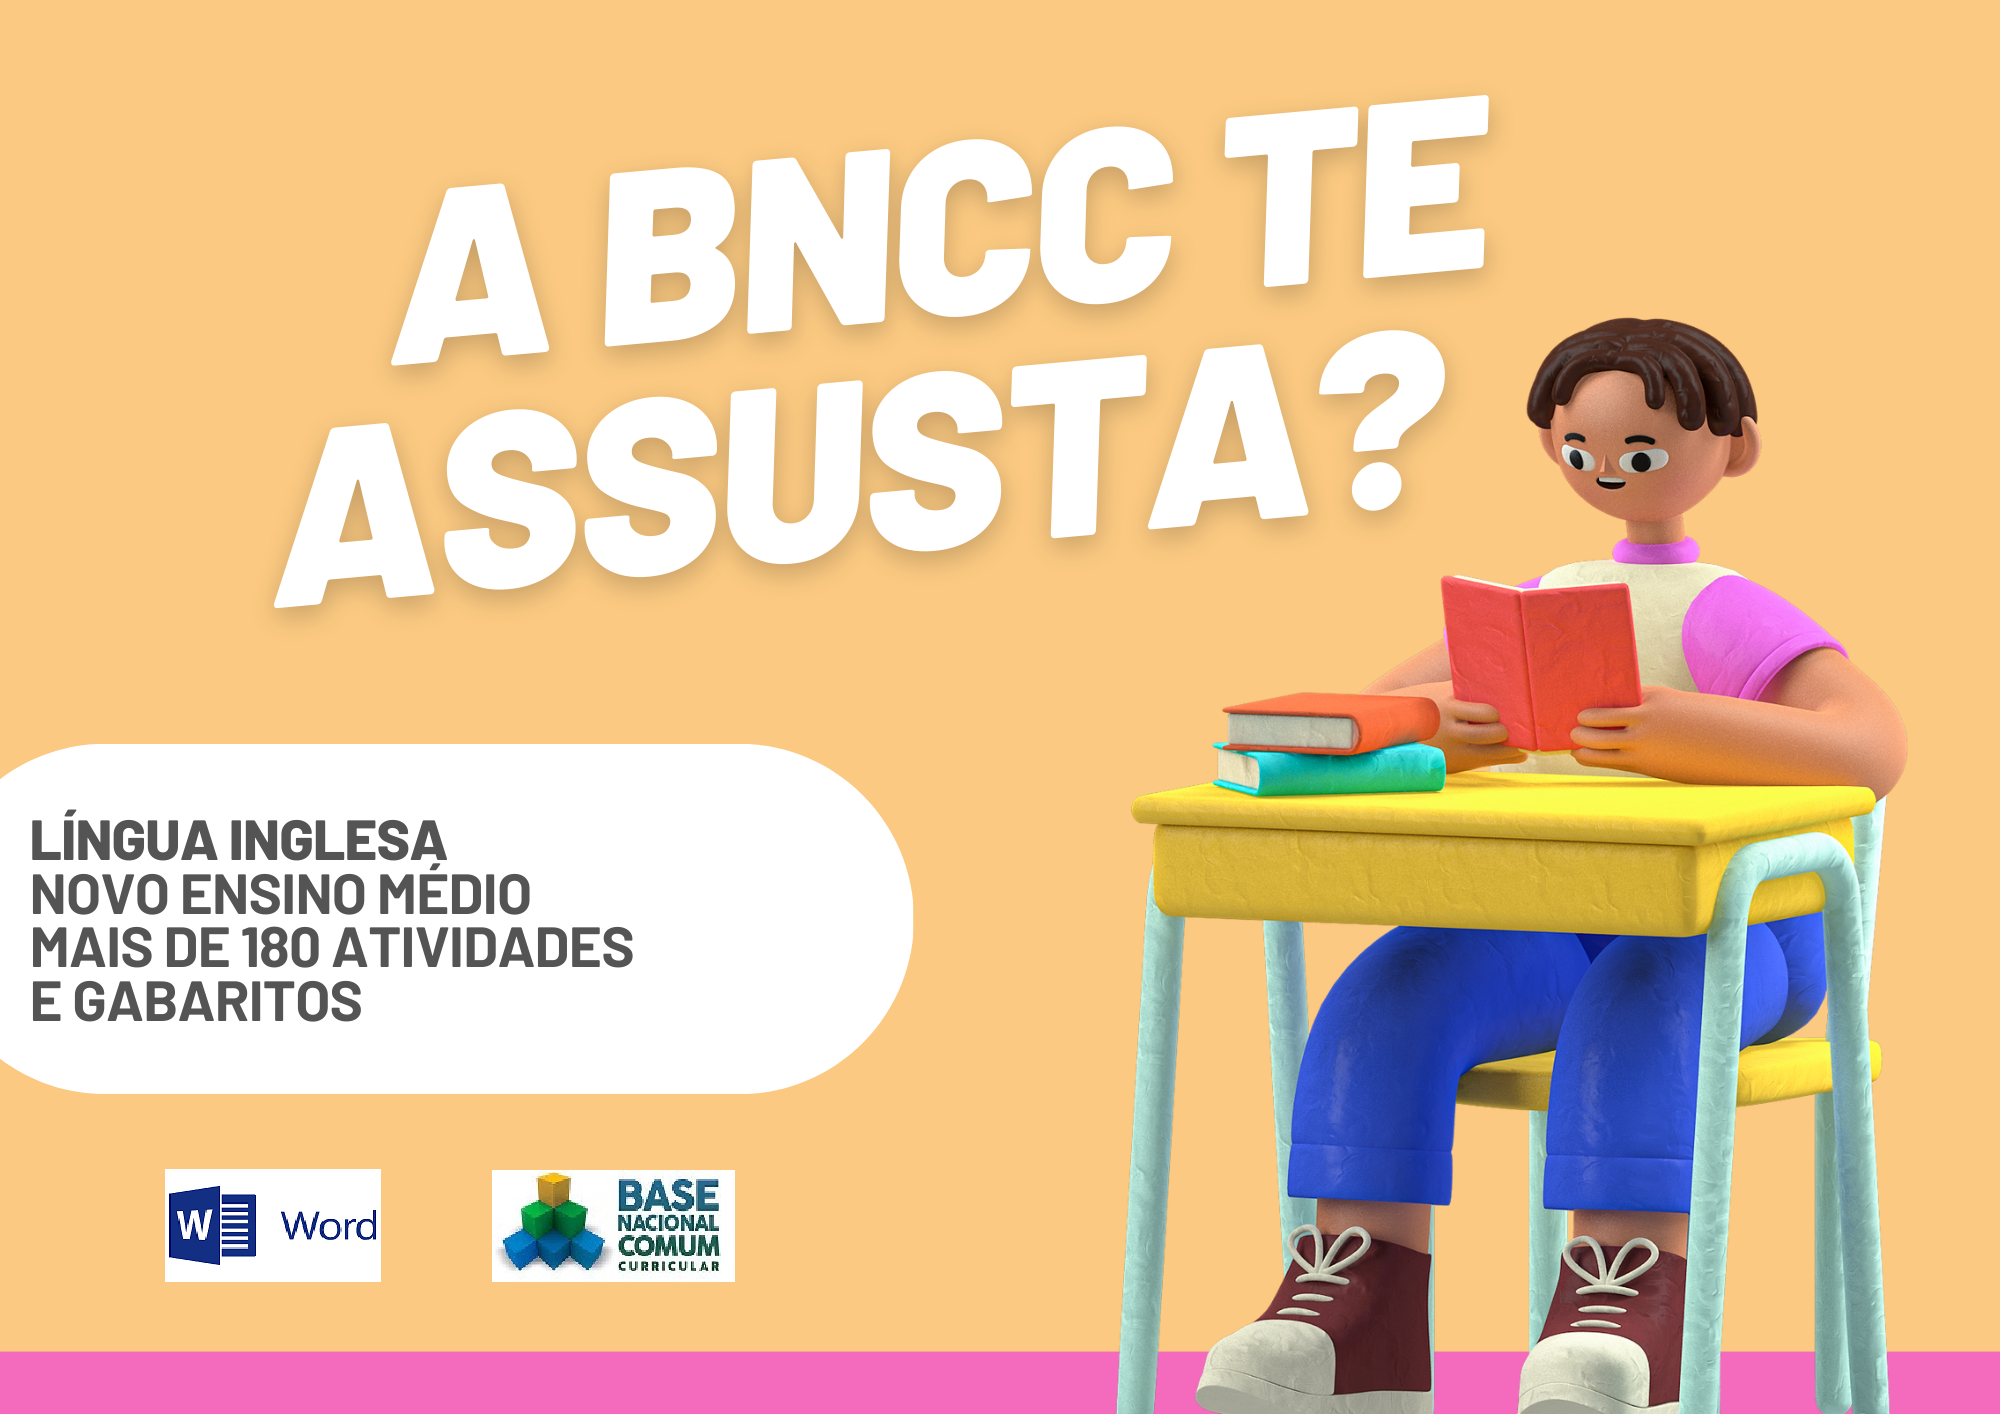 A BNCC te assusta lingua inglesa novo ensino médio mais de 180 atvidades e gabaritos com um aluno segurando um livro e os símbolos do Word e da BNCC